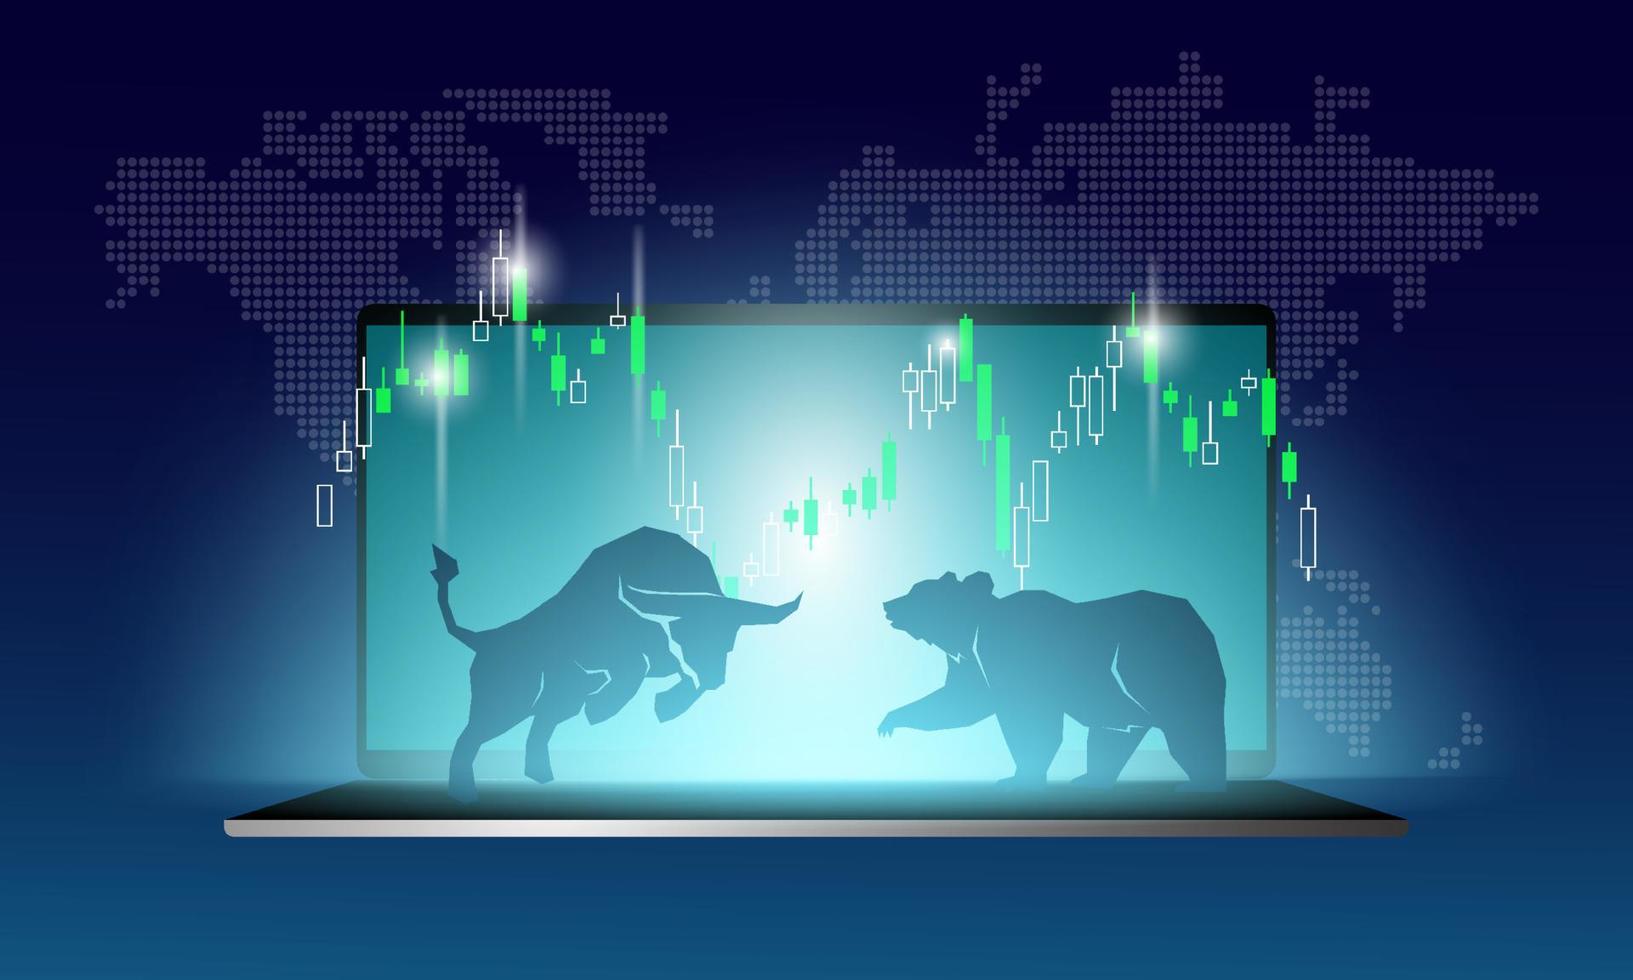 illustrazione vettoriale astratta di toro e orso. concetto di design grafico della tendenza rialzista e ribassista del mercato azionario.